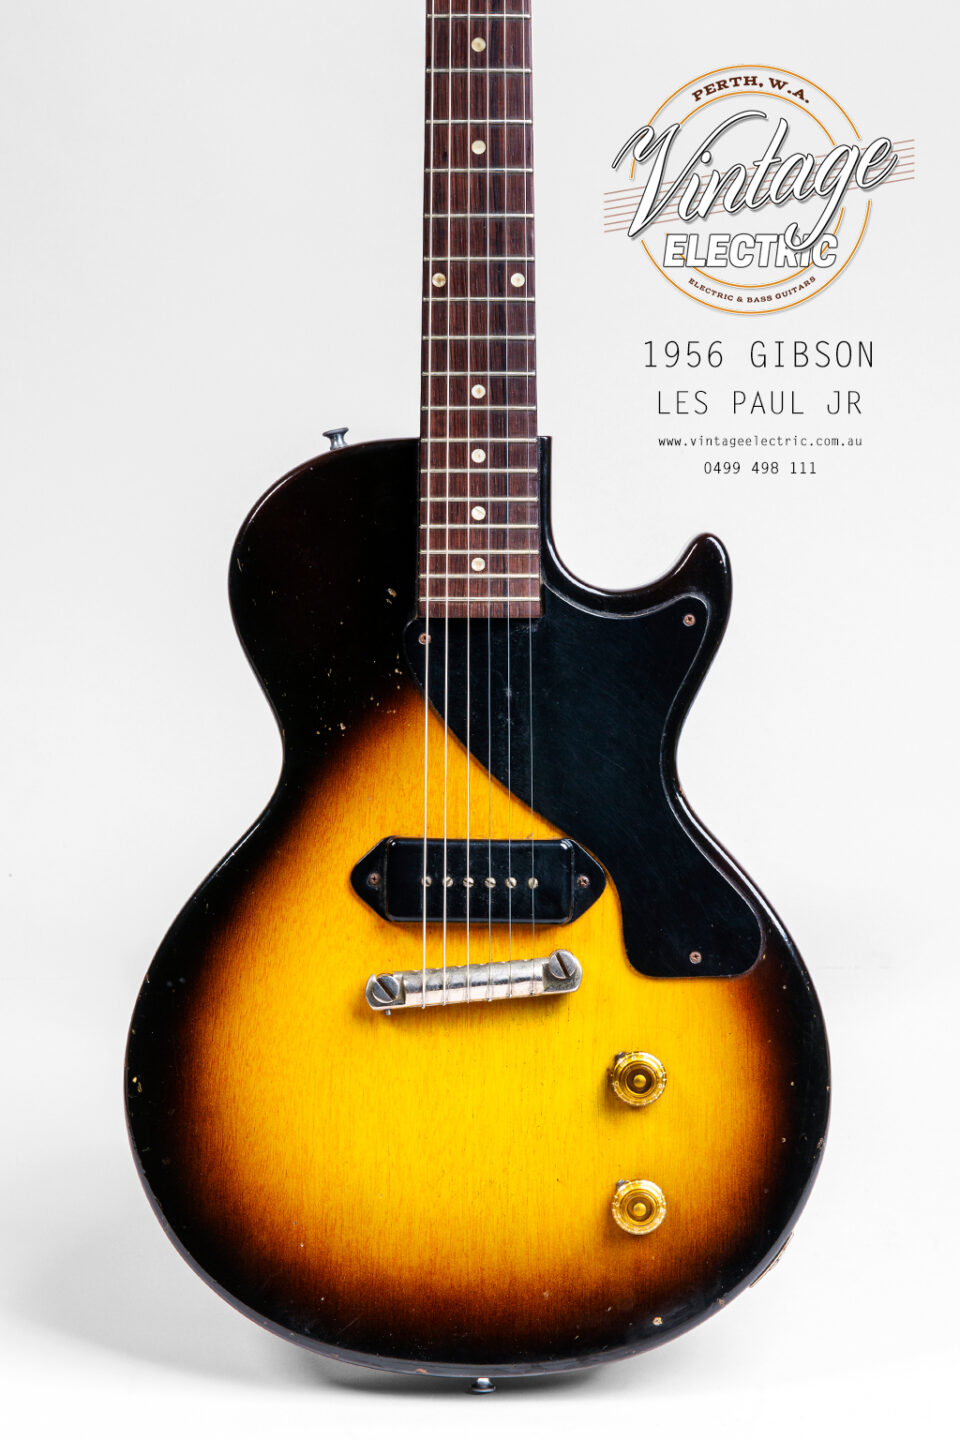 1956 Gibson Les Paul Jr Sunburst Body